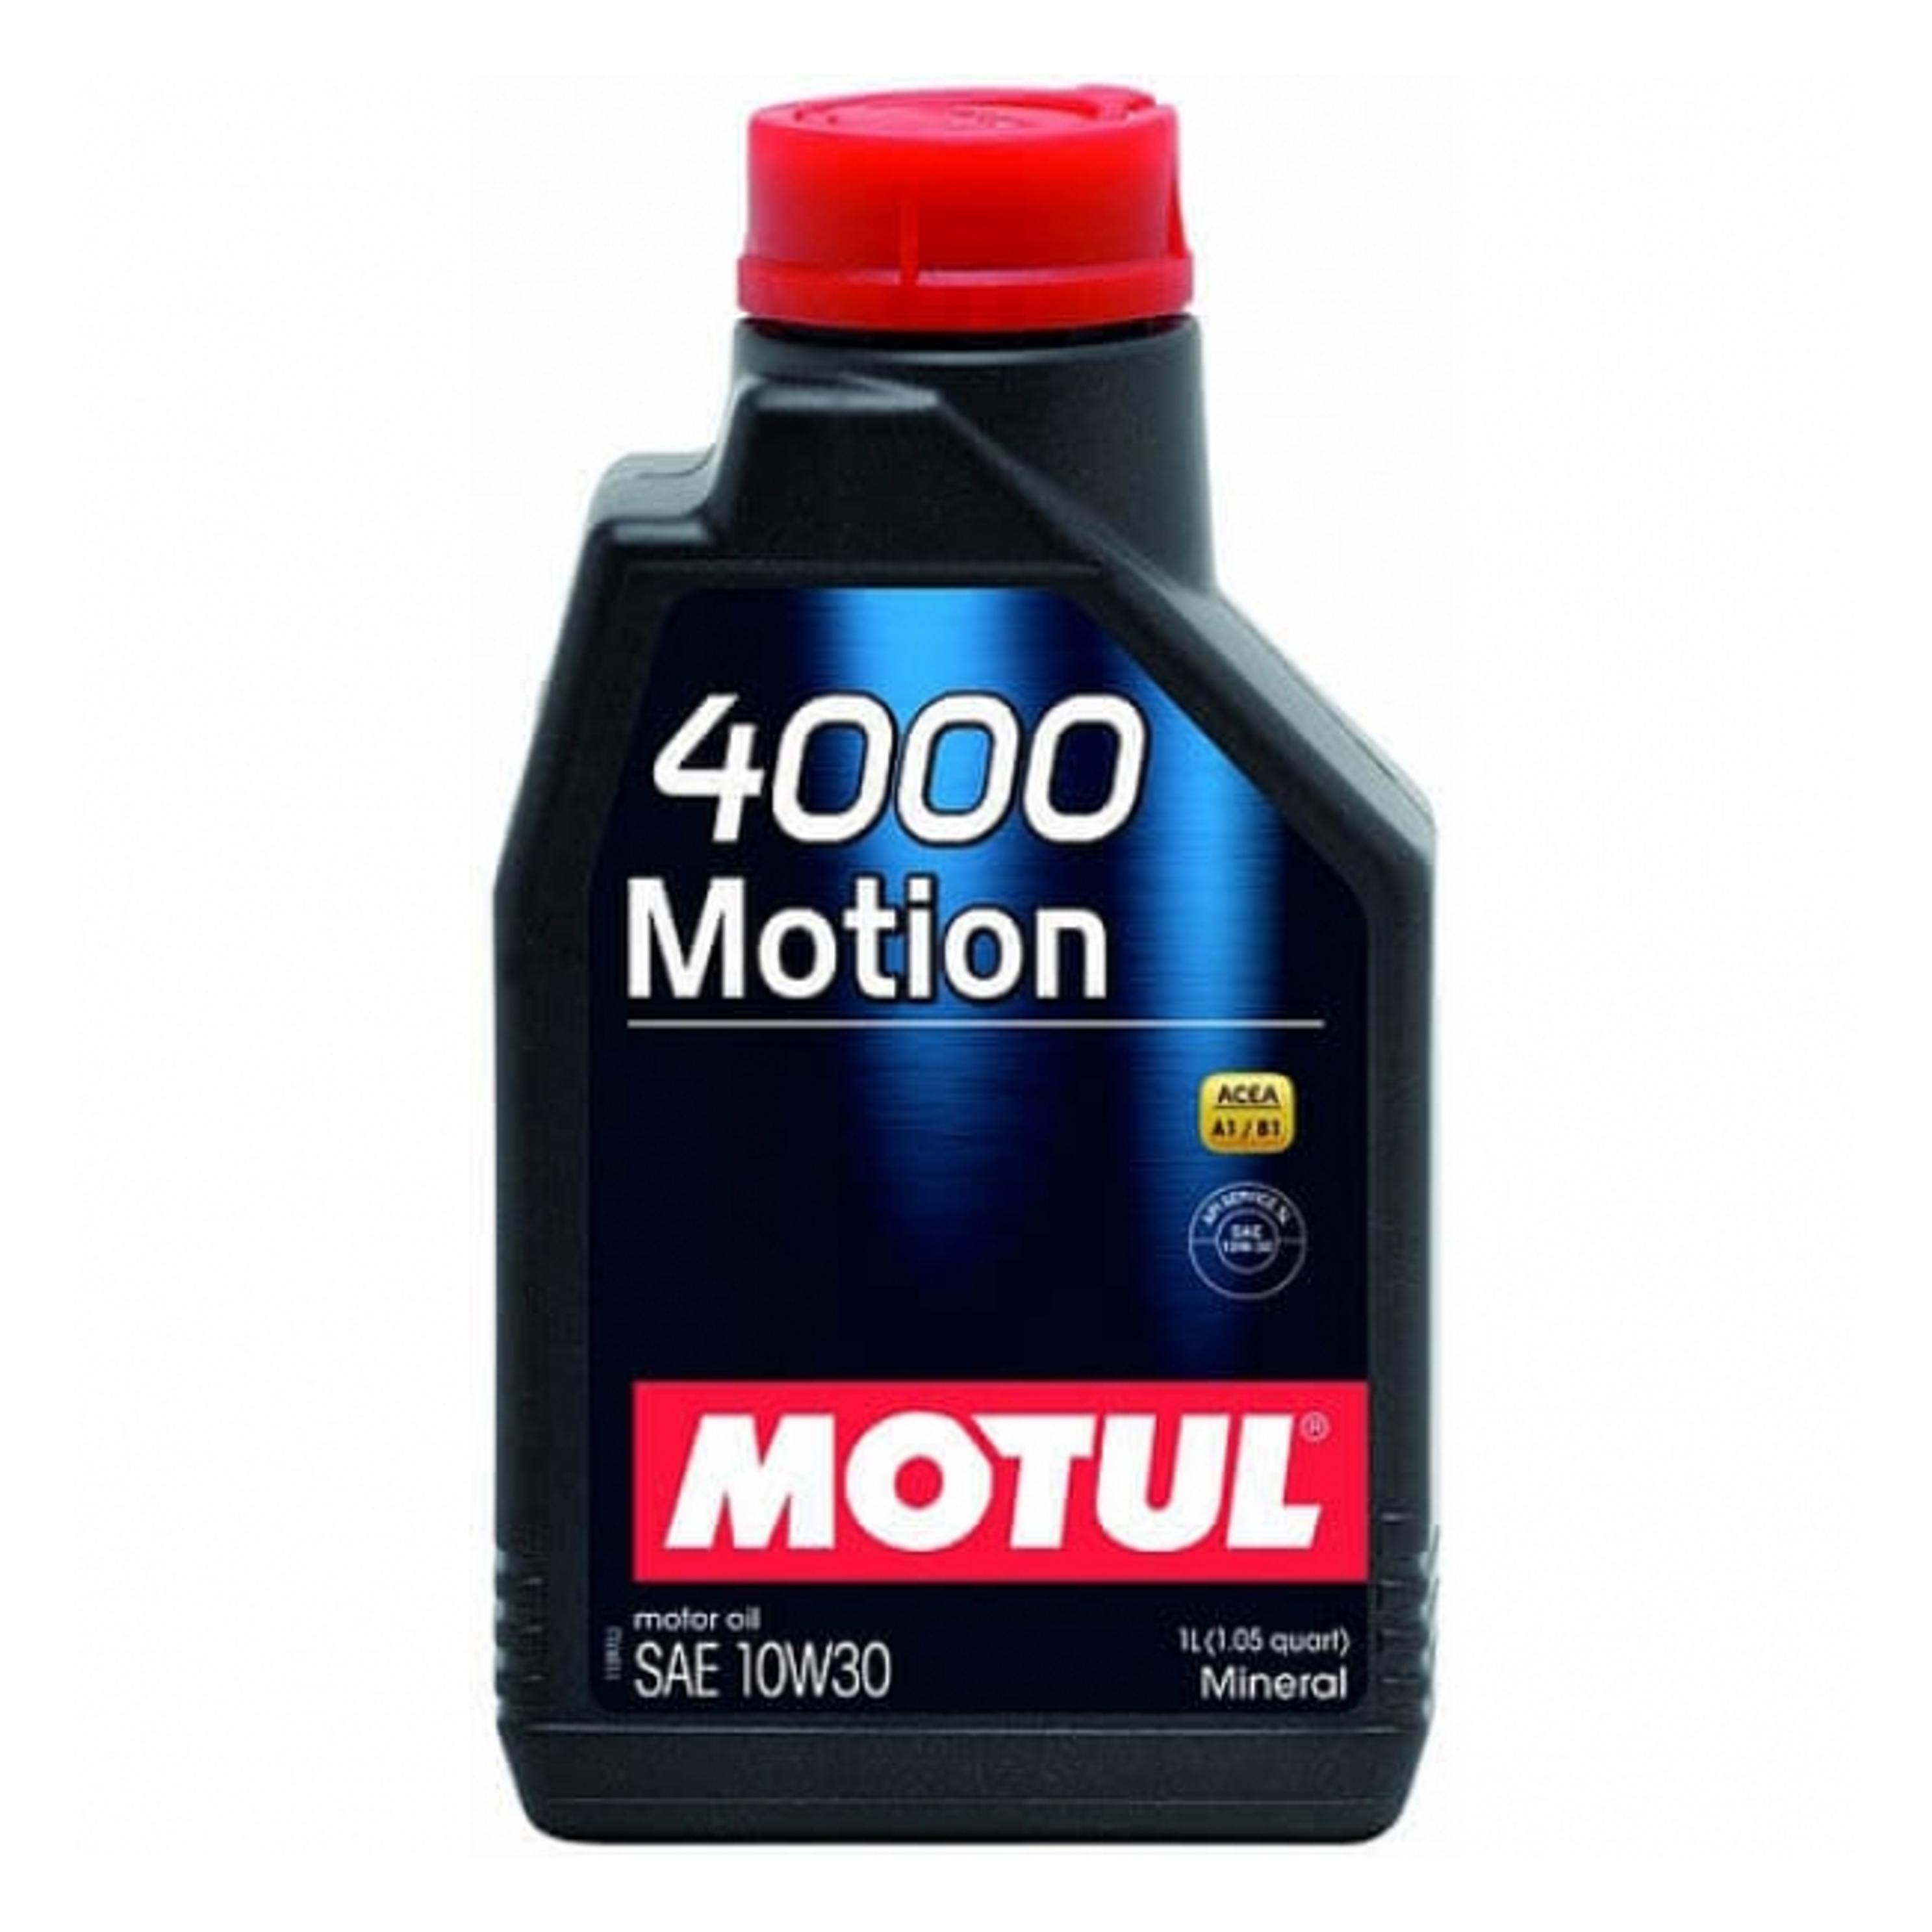 4000 Motion